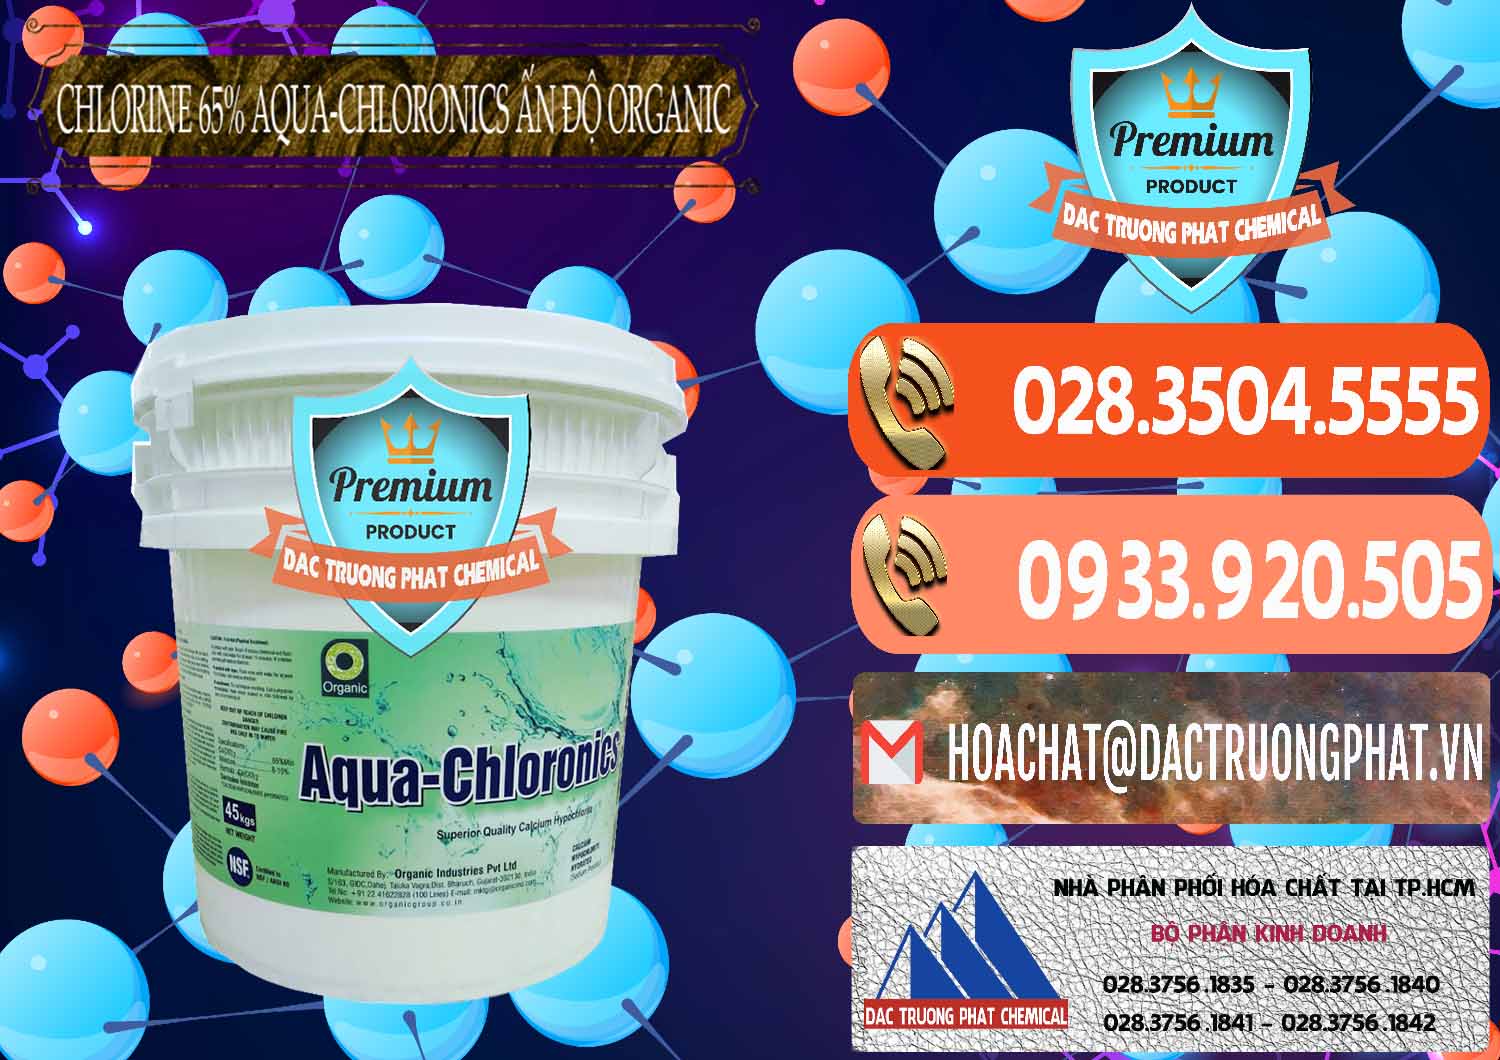 Đơn vị cung cấp và bán Chlorine – Clorin 65% Aqua-Chloronics Ấn Độ Organic India - 0210 - Cung cấp ( phân phối ) hóa chất tại TP.HCM - hoachatmientay.com